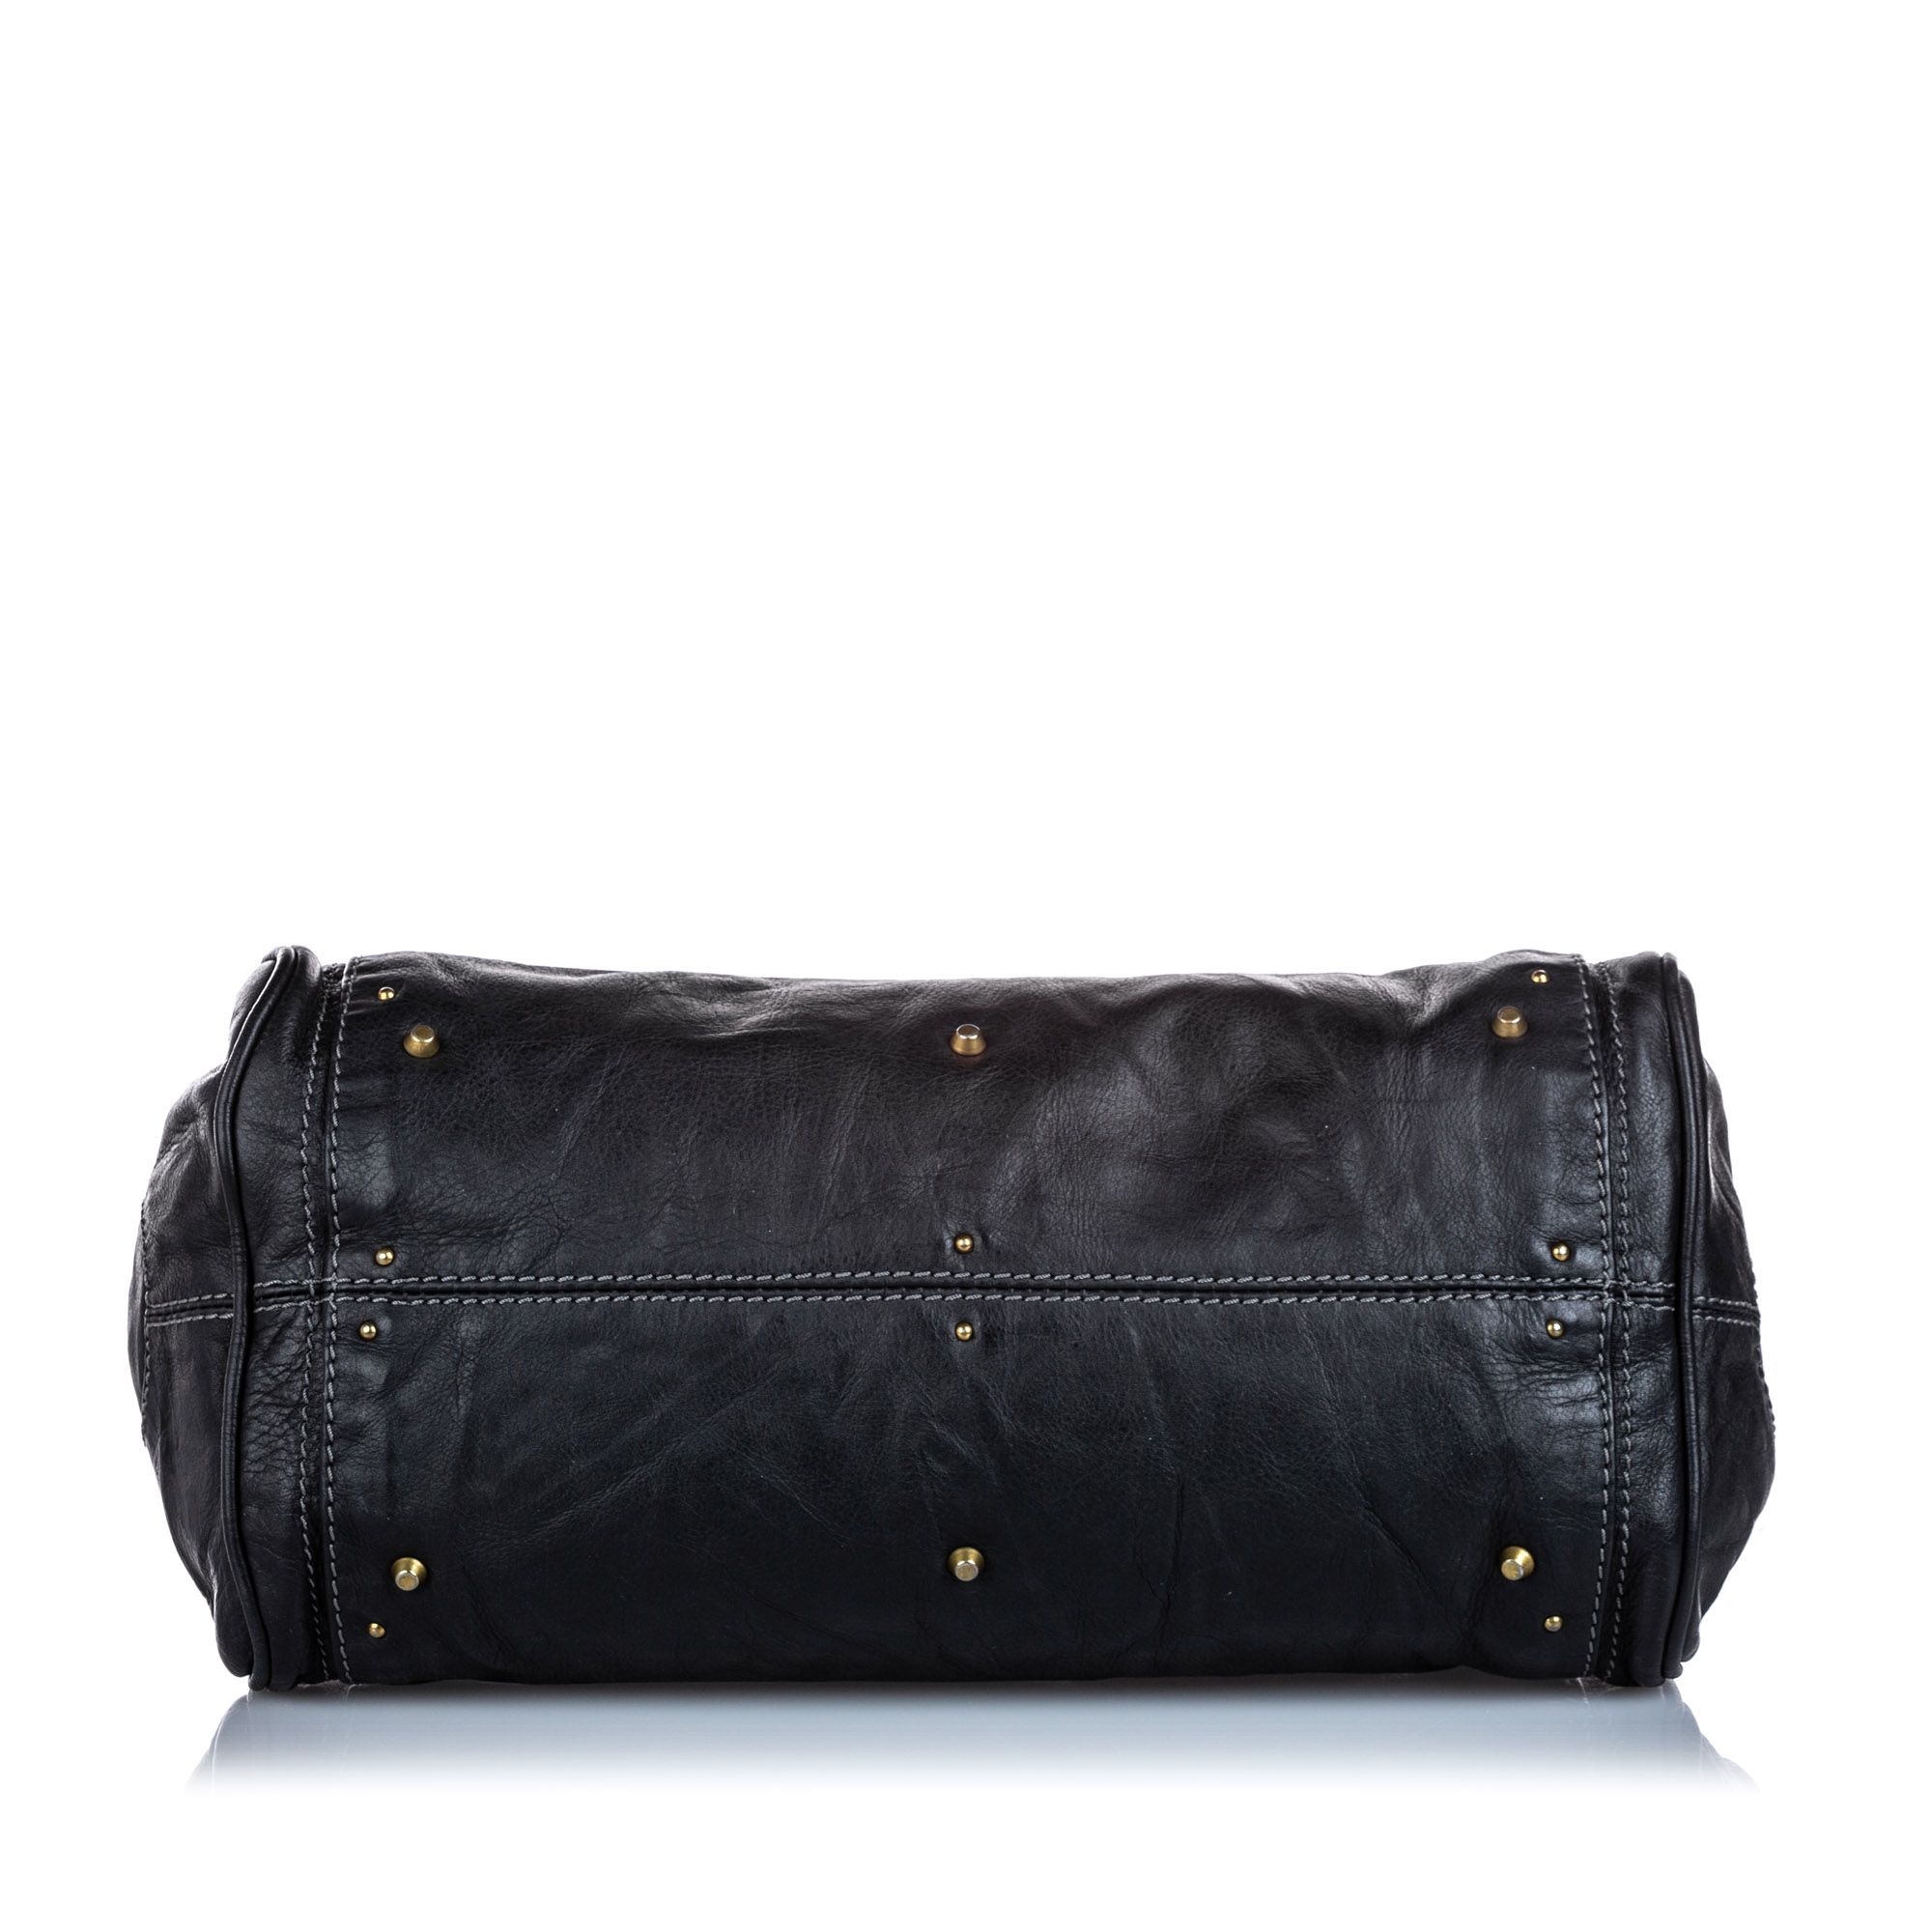 Vintage Chloe Leather Paddington Handbag Black